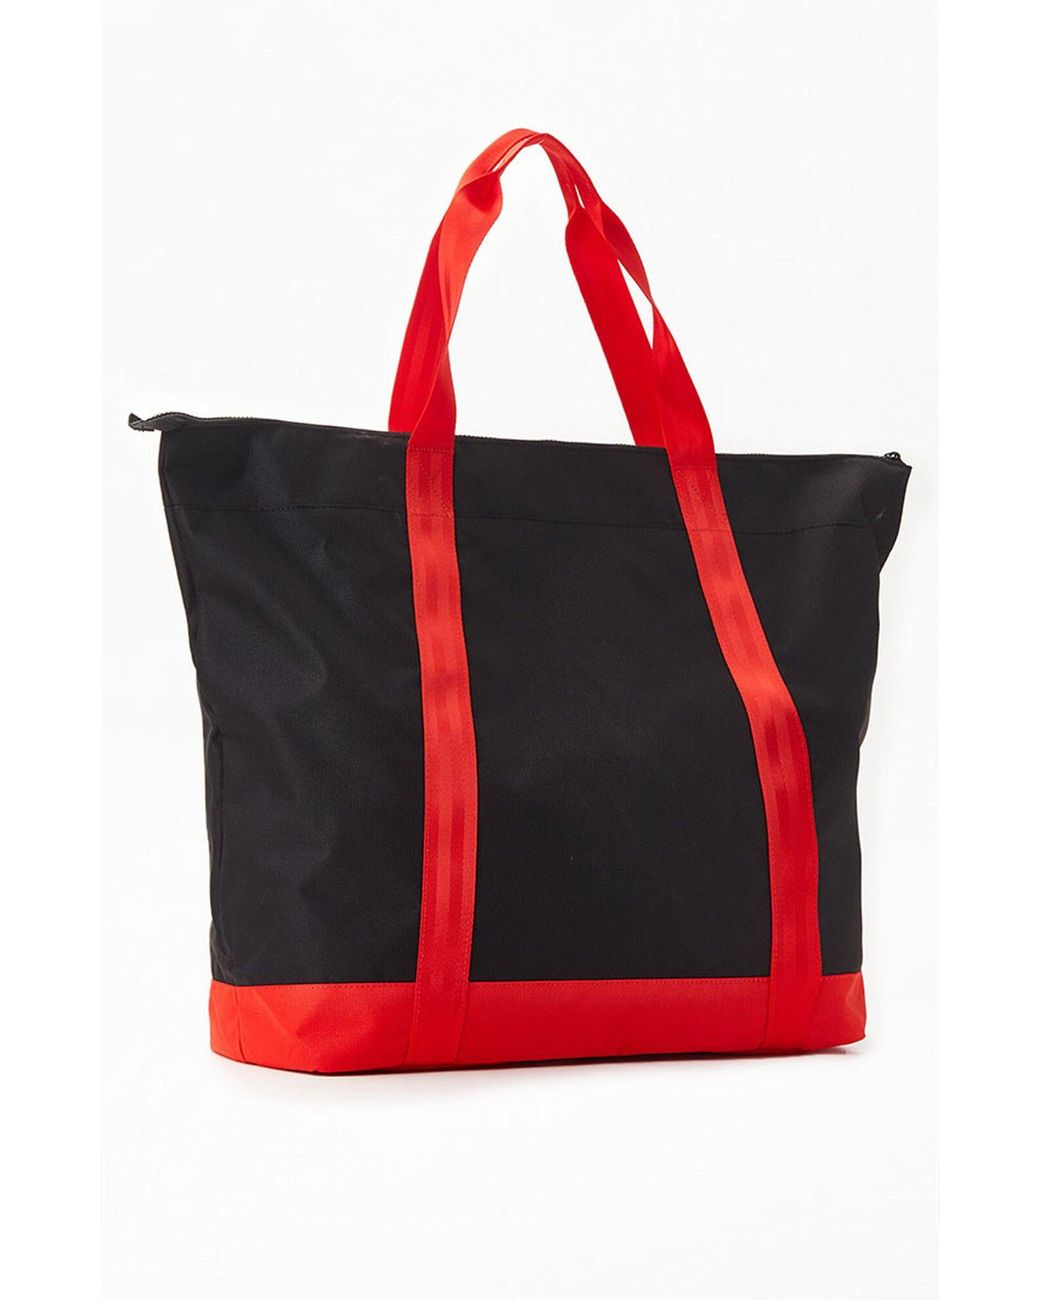 PUMA X Vogue Tote Bag in Red | Lyst